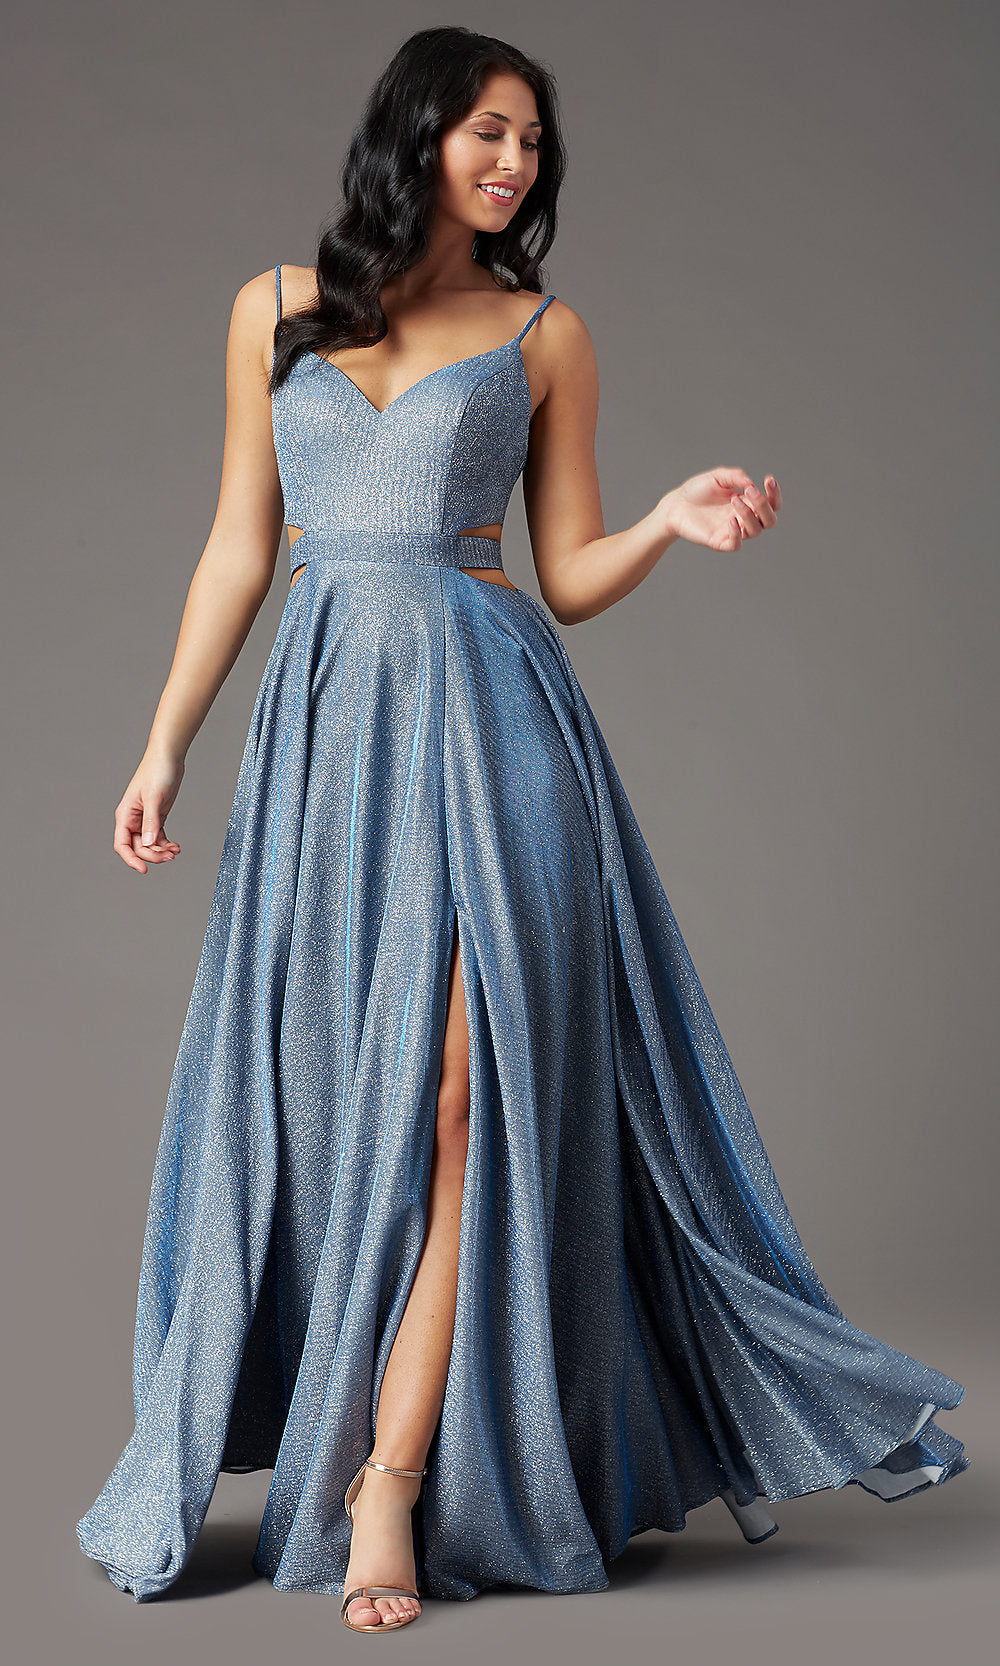 Glitter-Knit Long V-Neck Blue Prom Dress by PromGirl